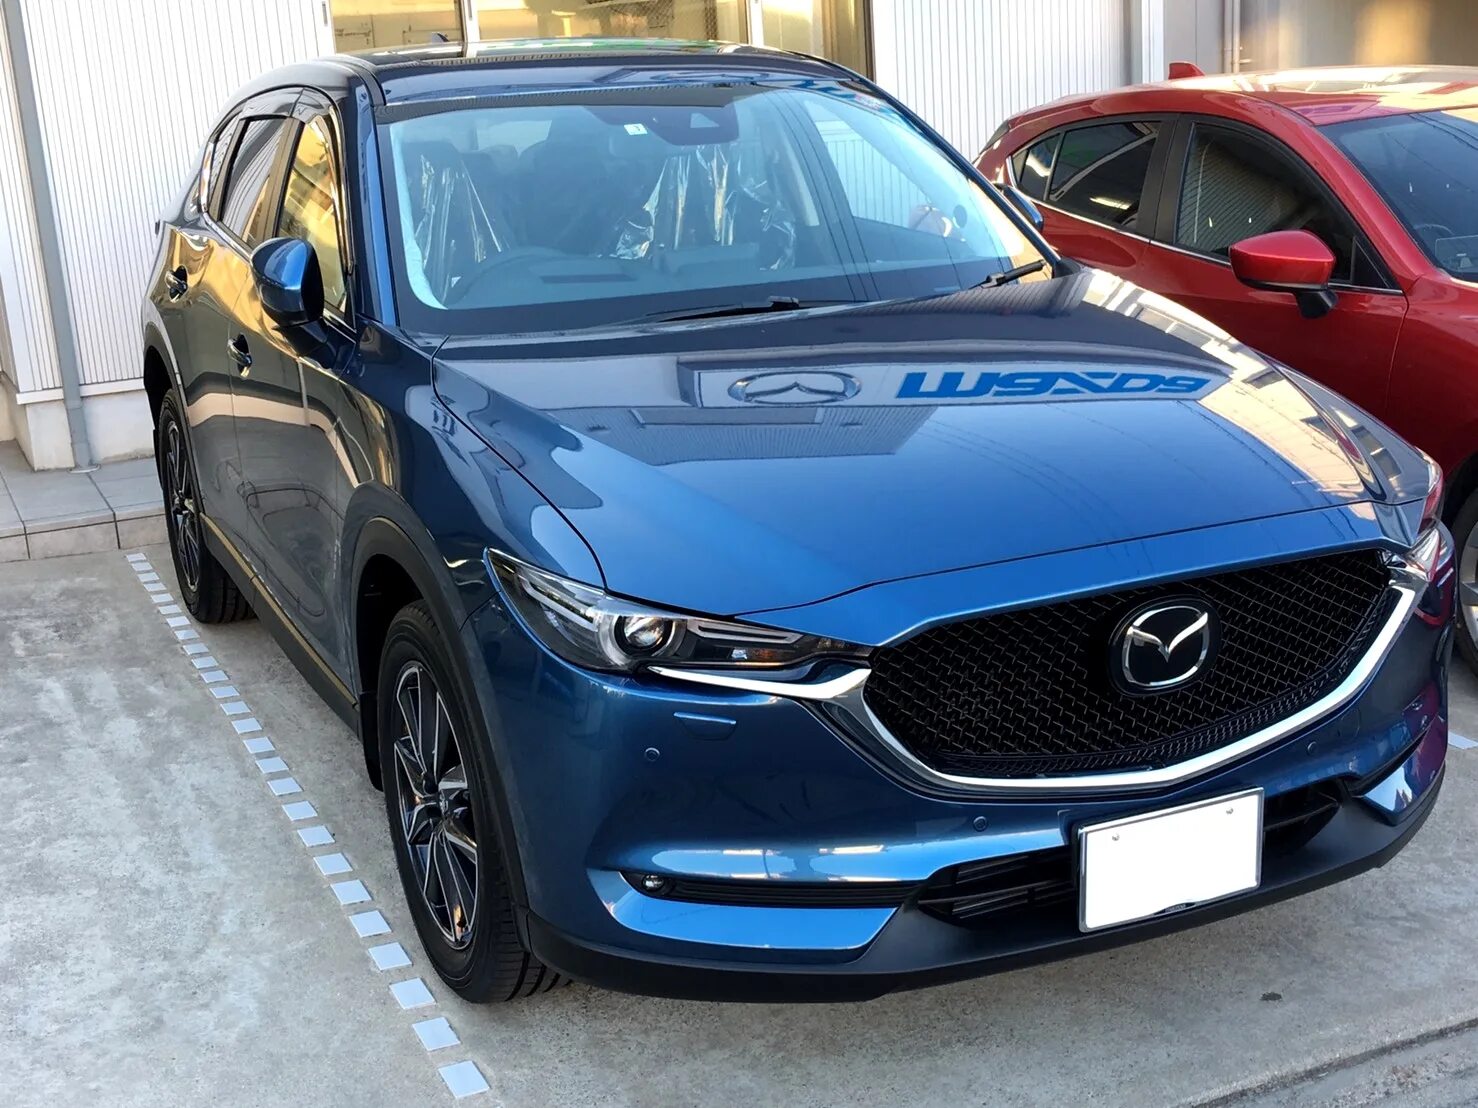 Цвета мазда сх. Mazda CX-5 2017 Eternal Blue. Мазда CX 5 Eternal Blue. Eternal Blue Мазда СХ 5. Mazda CX 5 синяя.